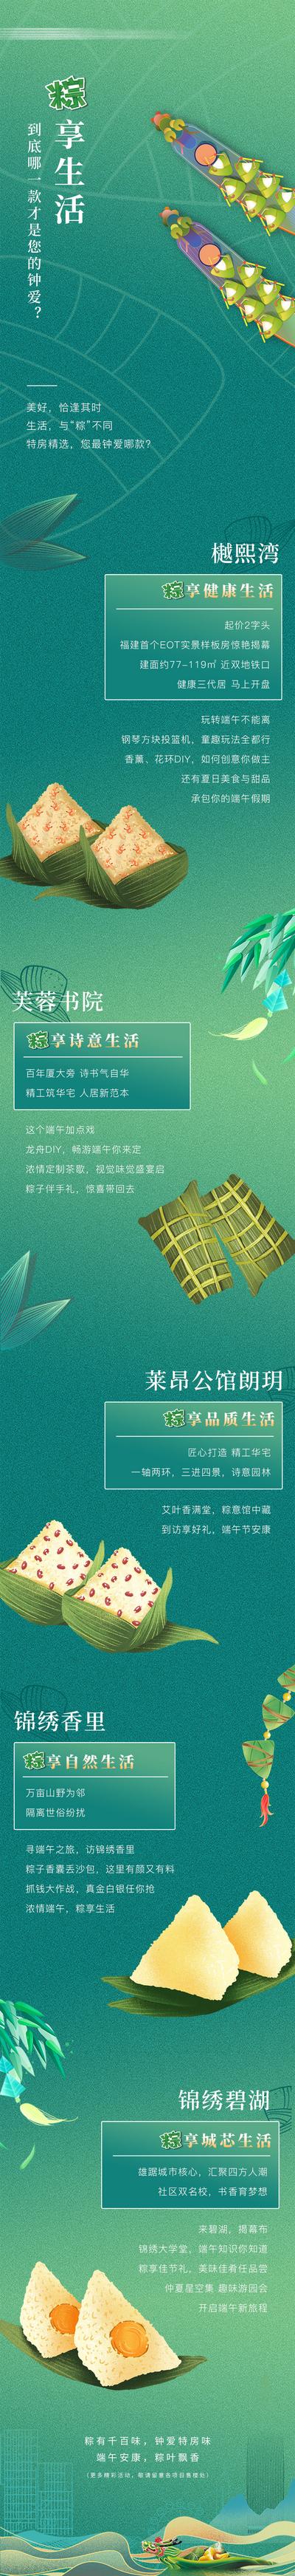 南门网 专题设计 长图 房地产 端午节 龙舟 书卷 粽子 香囊